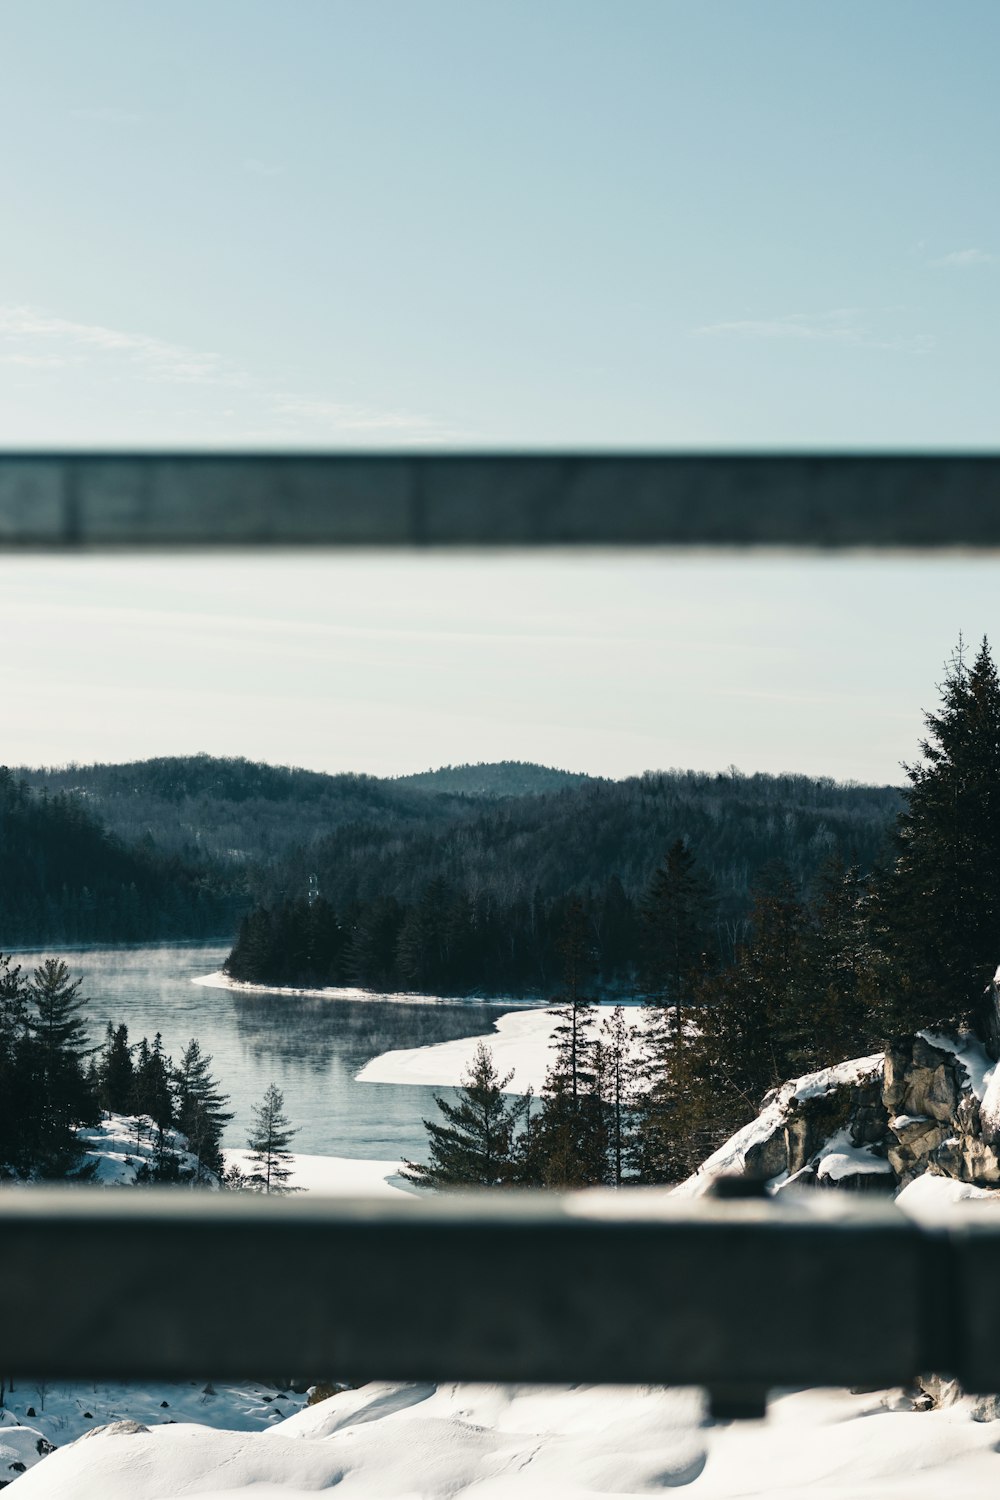 Una vista de un puente cubierto de nieve